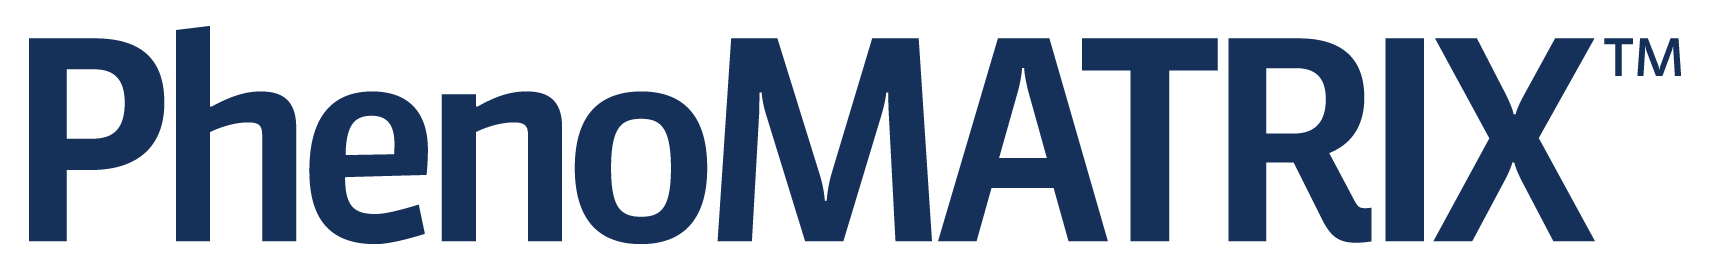 PhenoMatrix_Logo